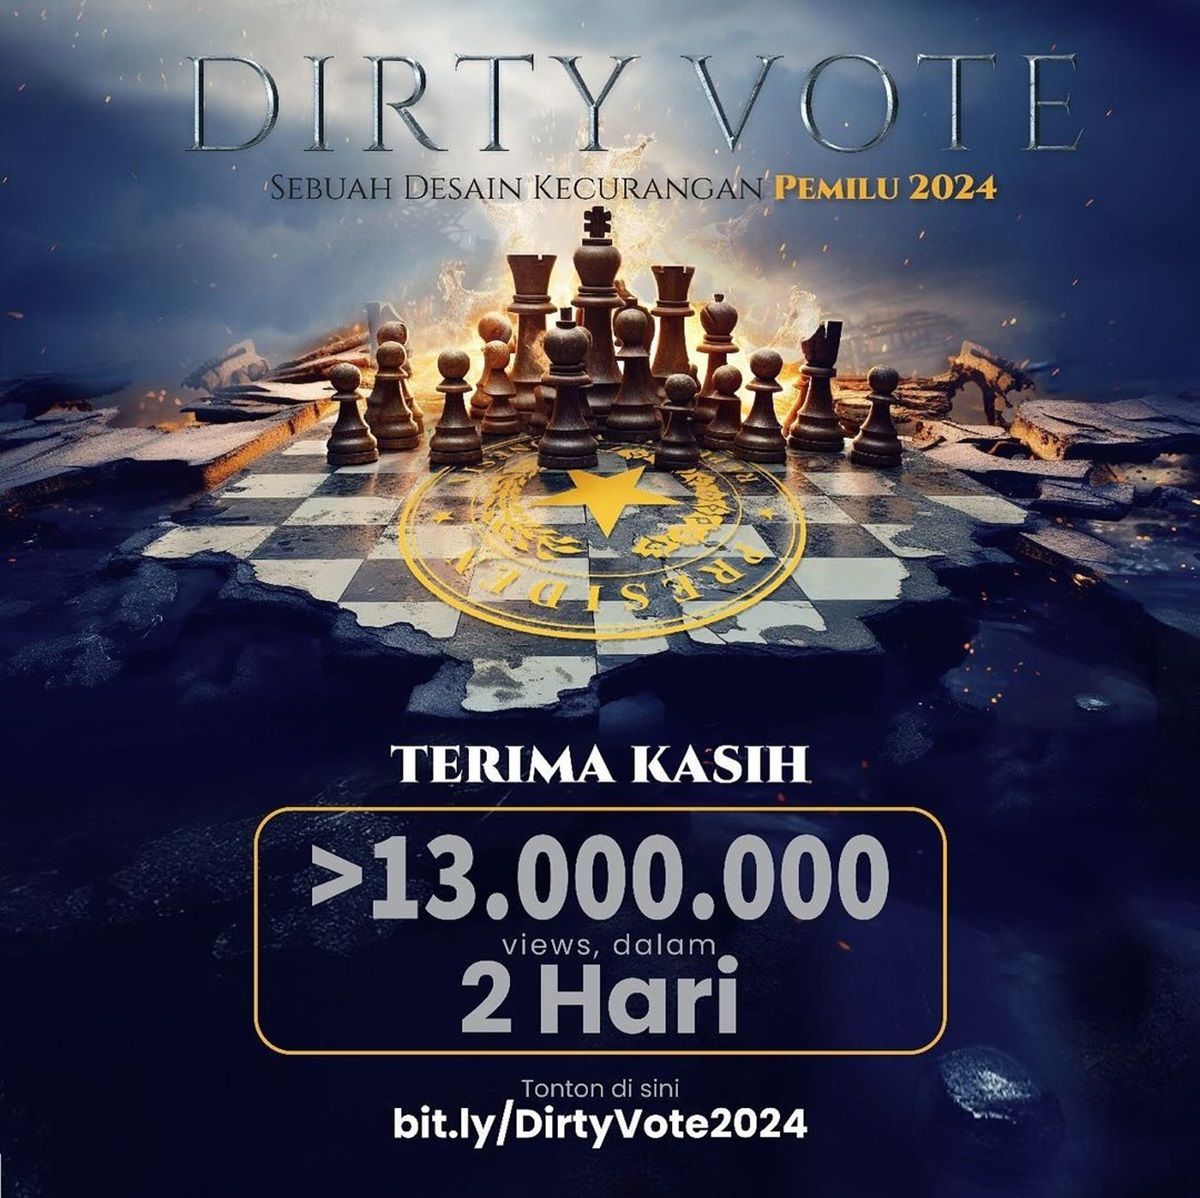 Unggahan Dandhy Laksono soal Dirty Vote yang tembus 13 juta views.